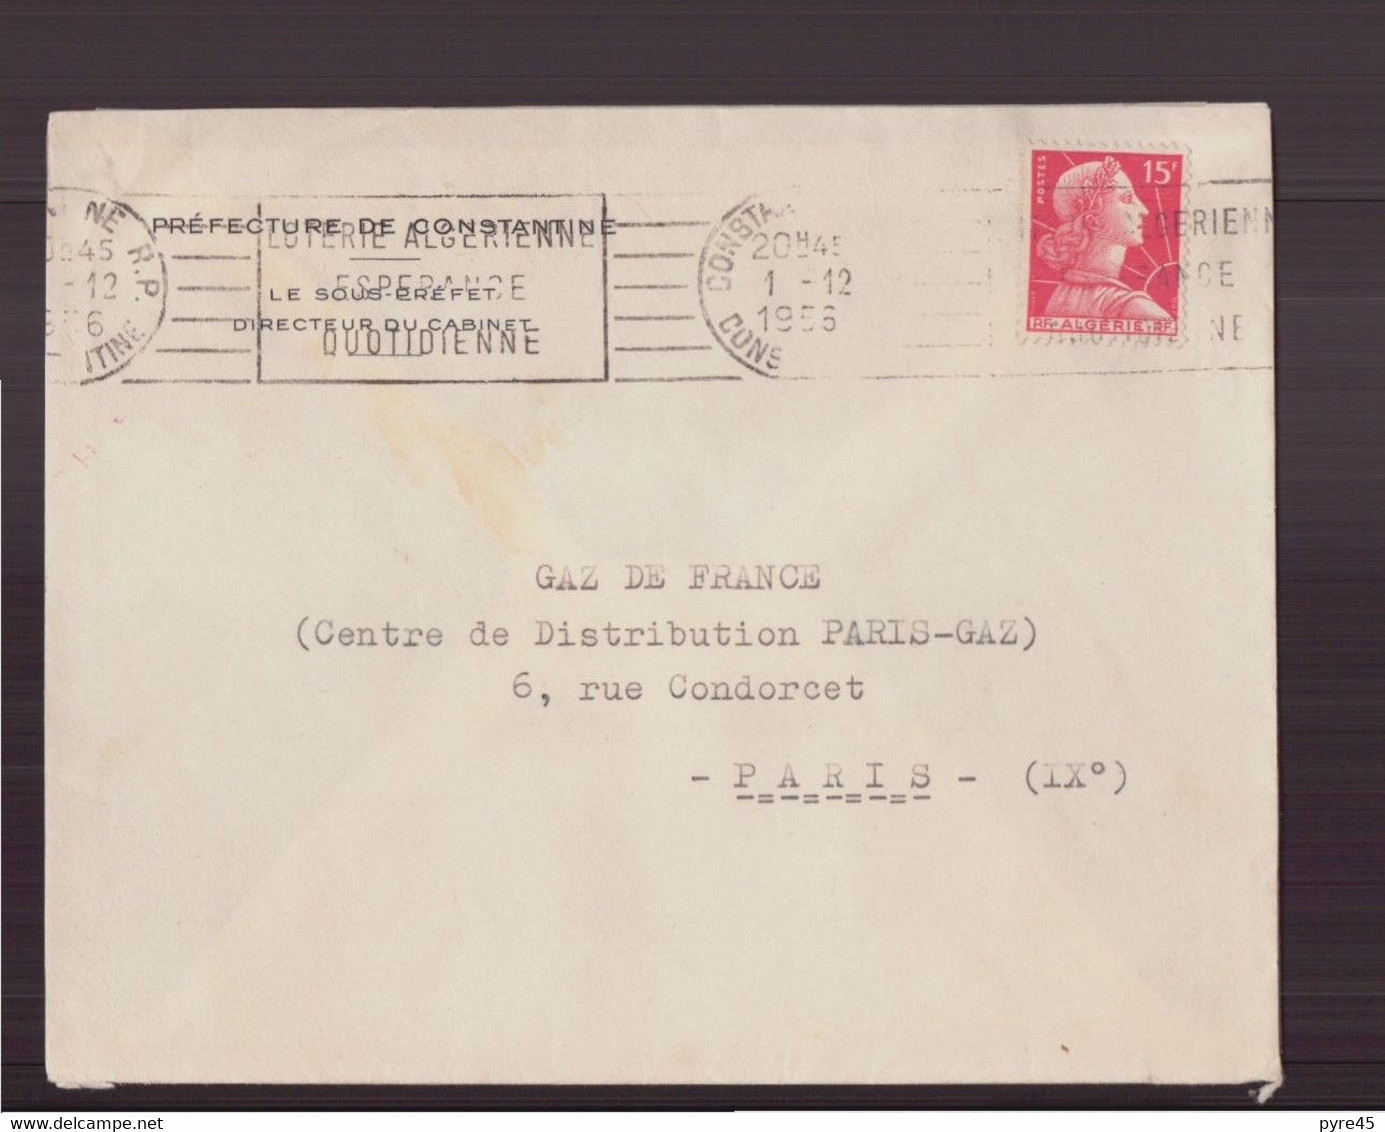 Algérie, Enveloppe Du 1 Décembre 1956 De Constantine Pour Paris - Covers & Documents